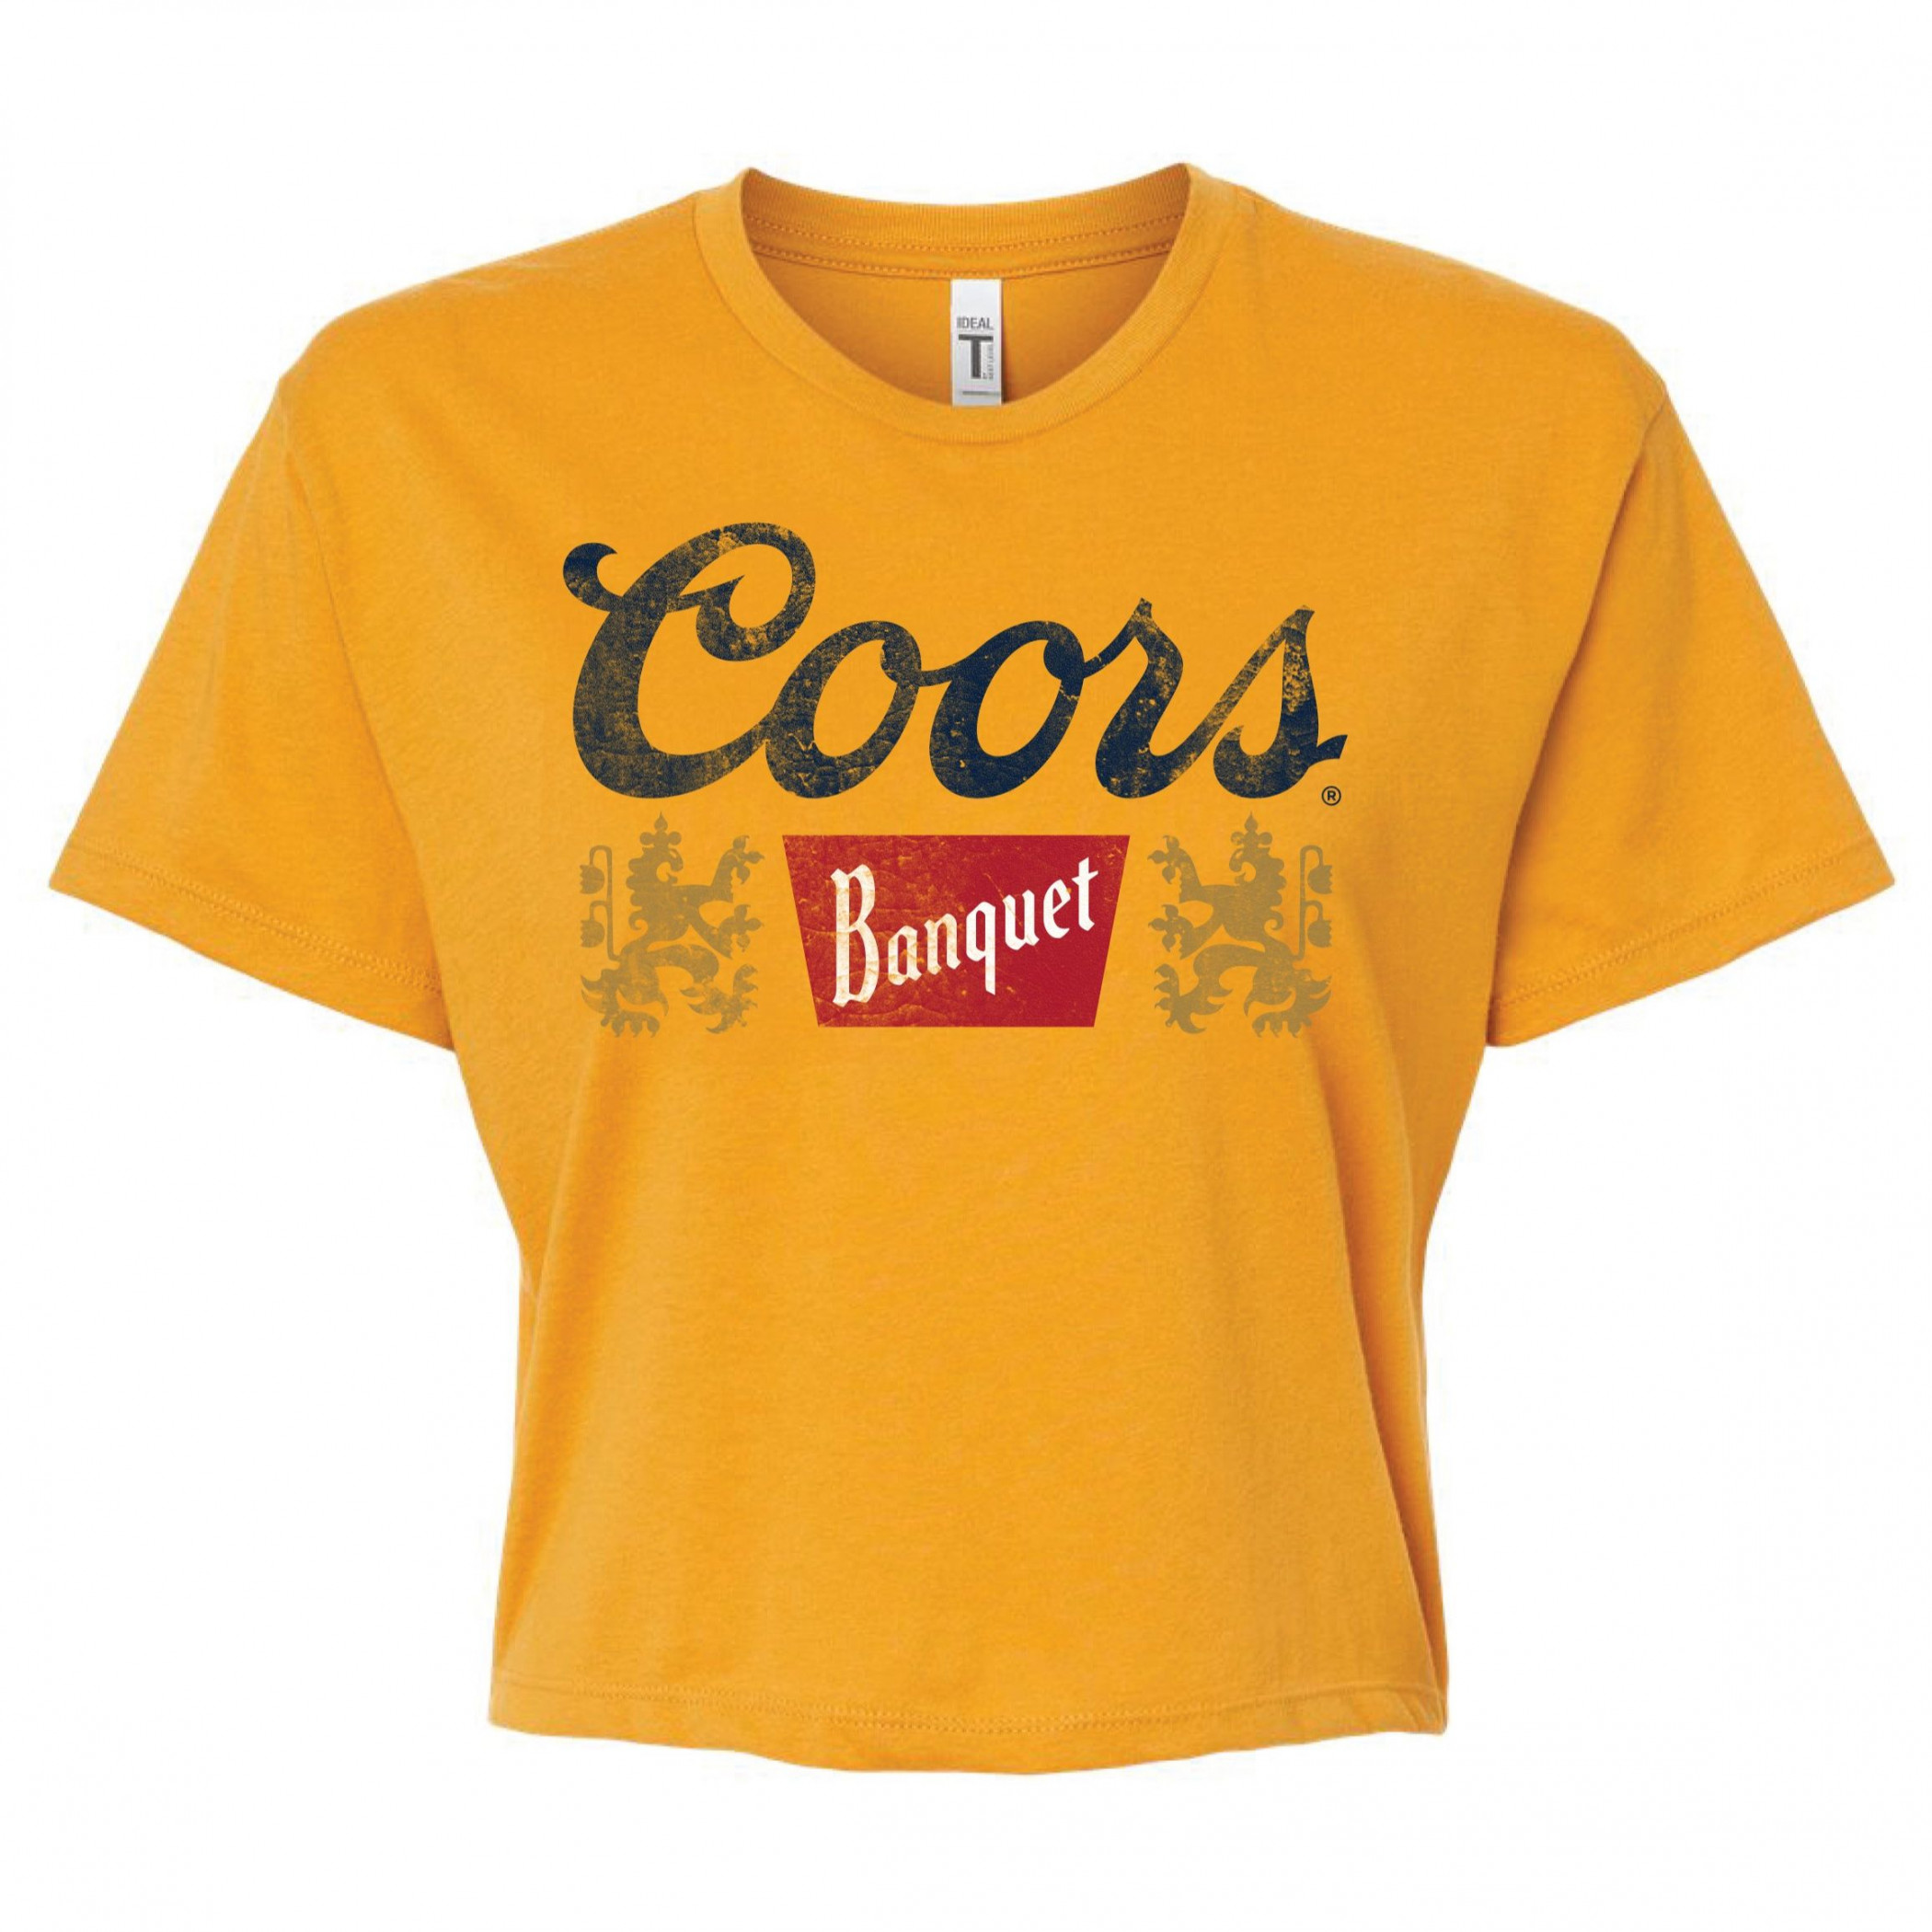 Coors Banquet Golden Women's Crop Top T-Shirt